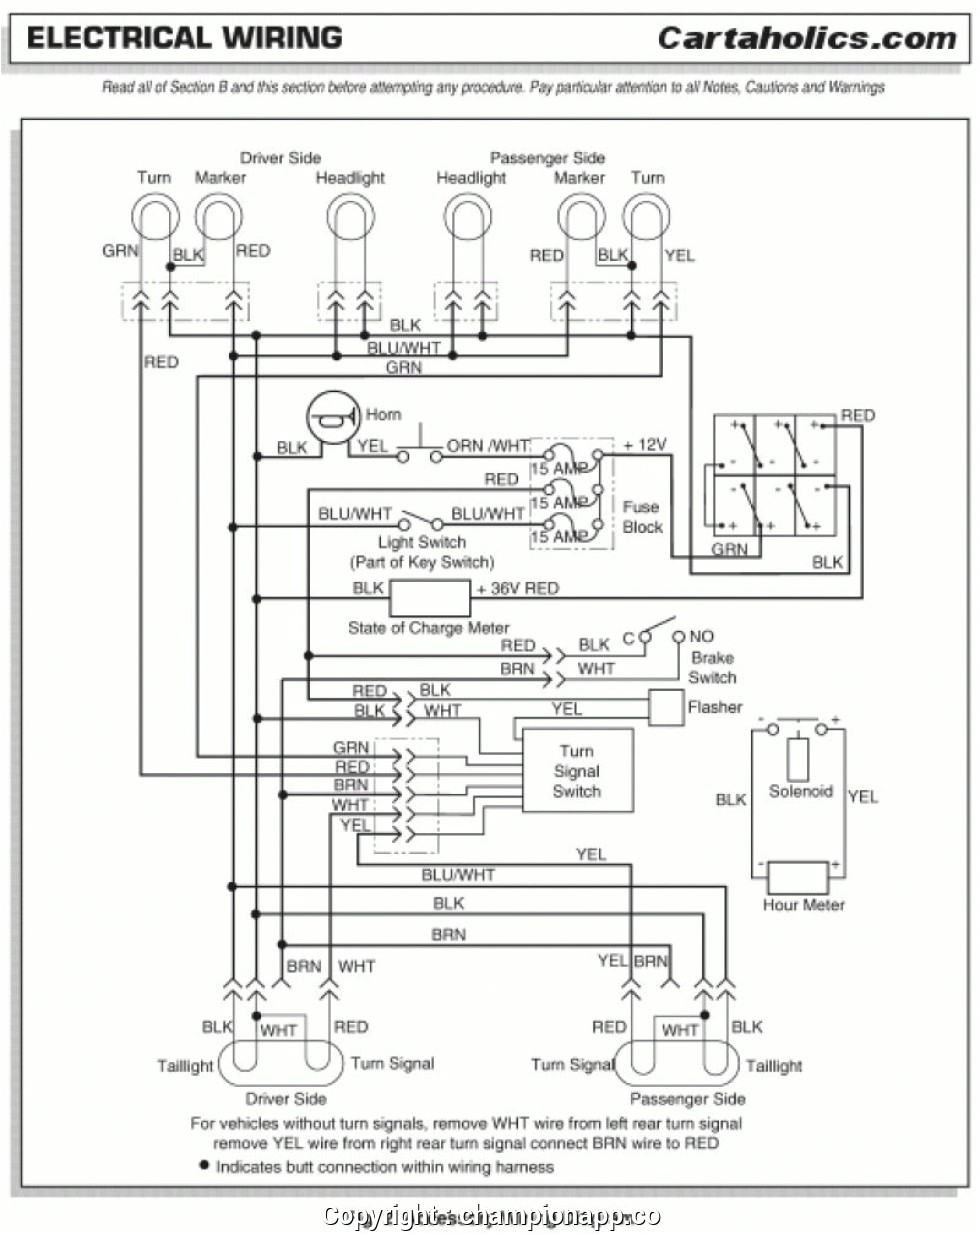 2003 ezgo wiring diagram data schematics wiring diagram u2022 rh xrkarting com 1999 ez go txt